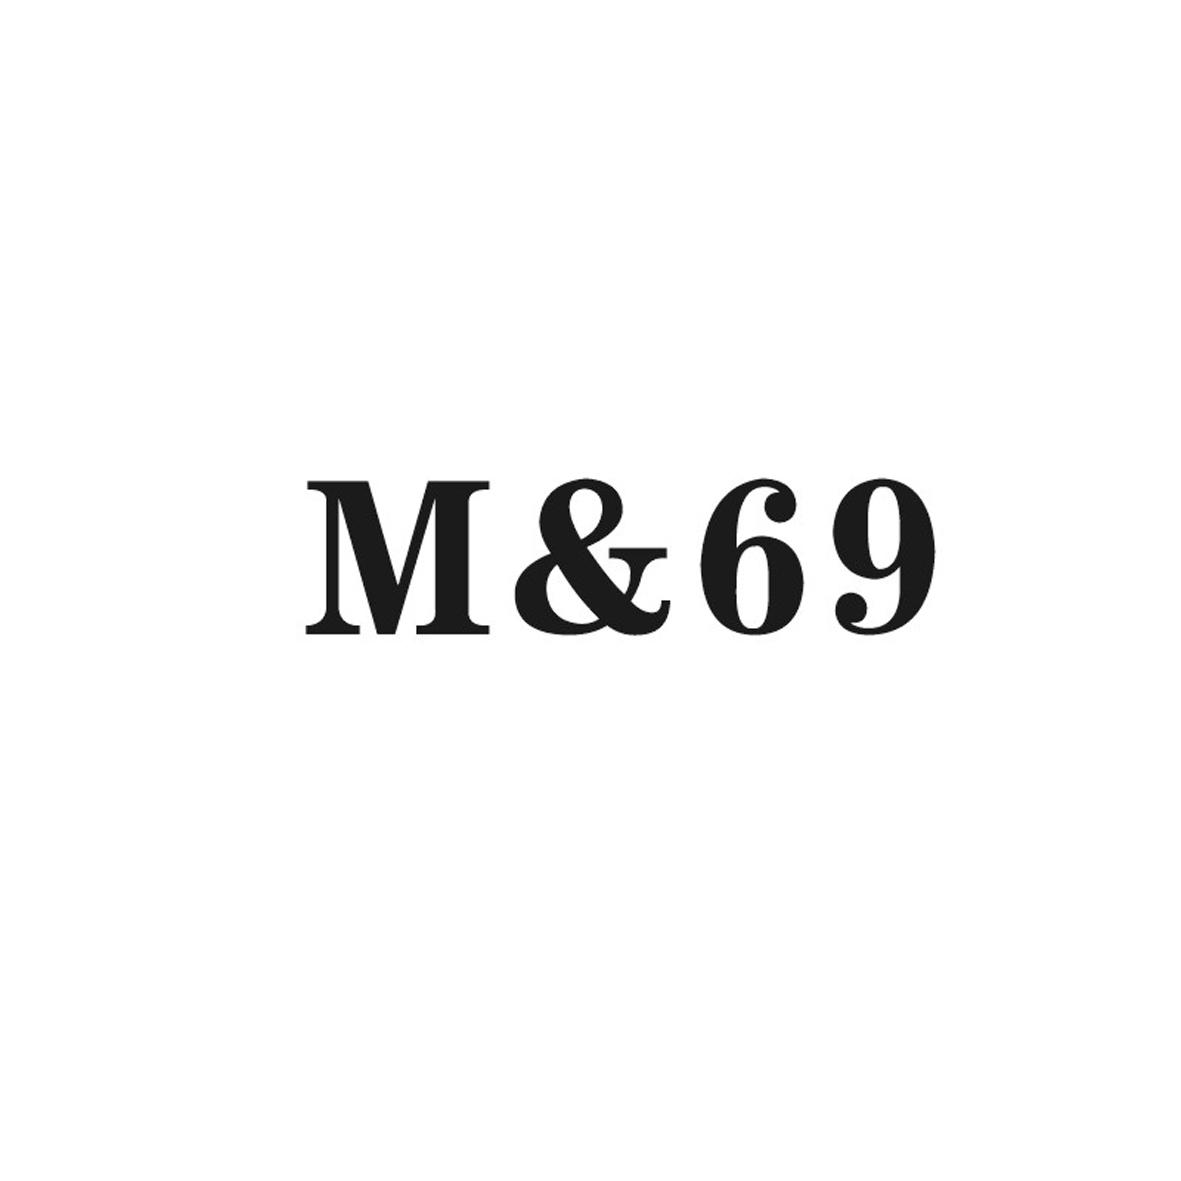 M&69